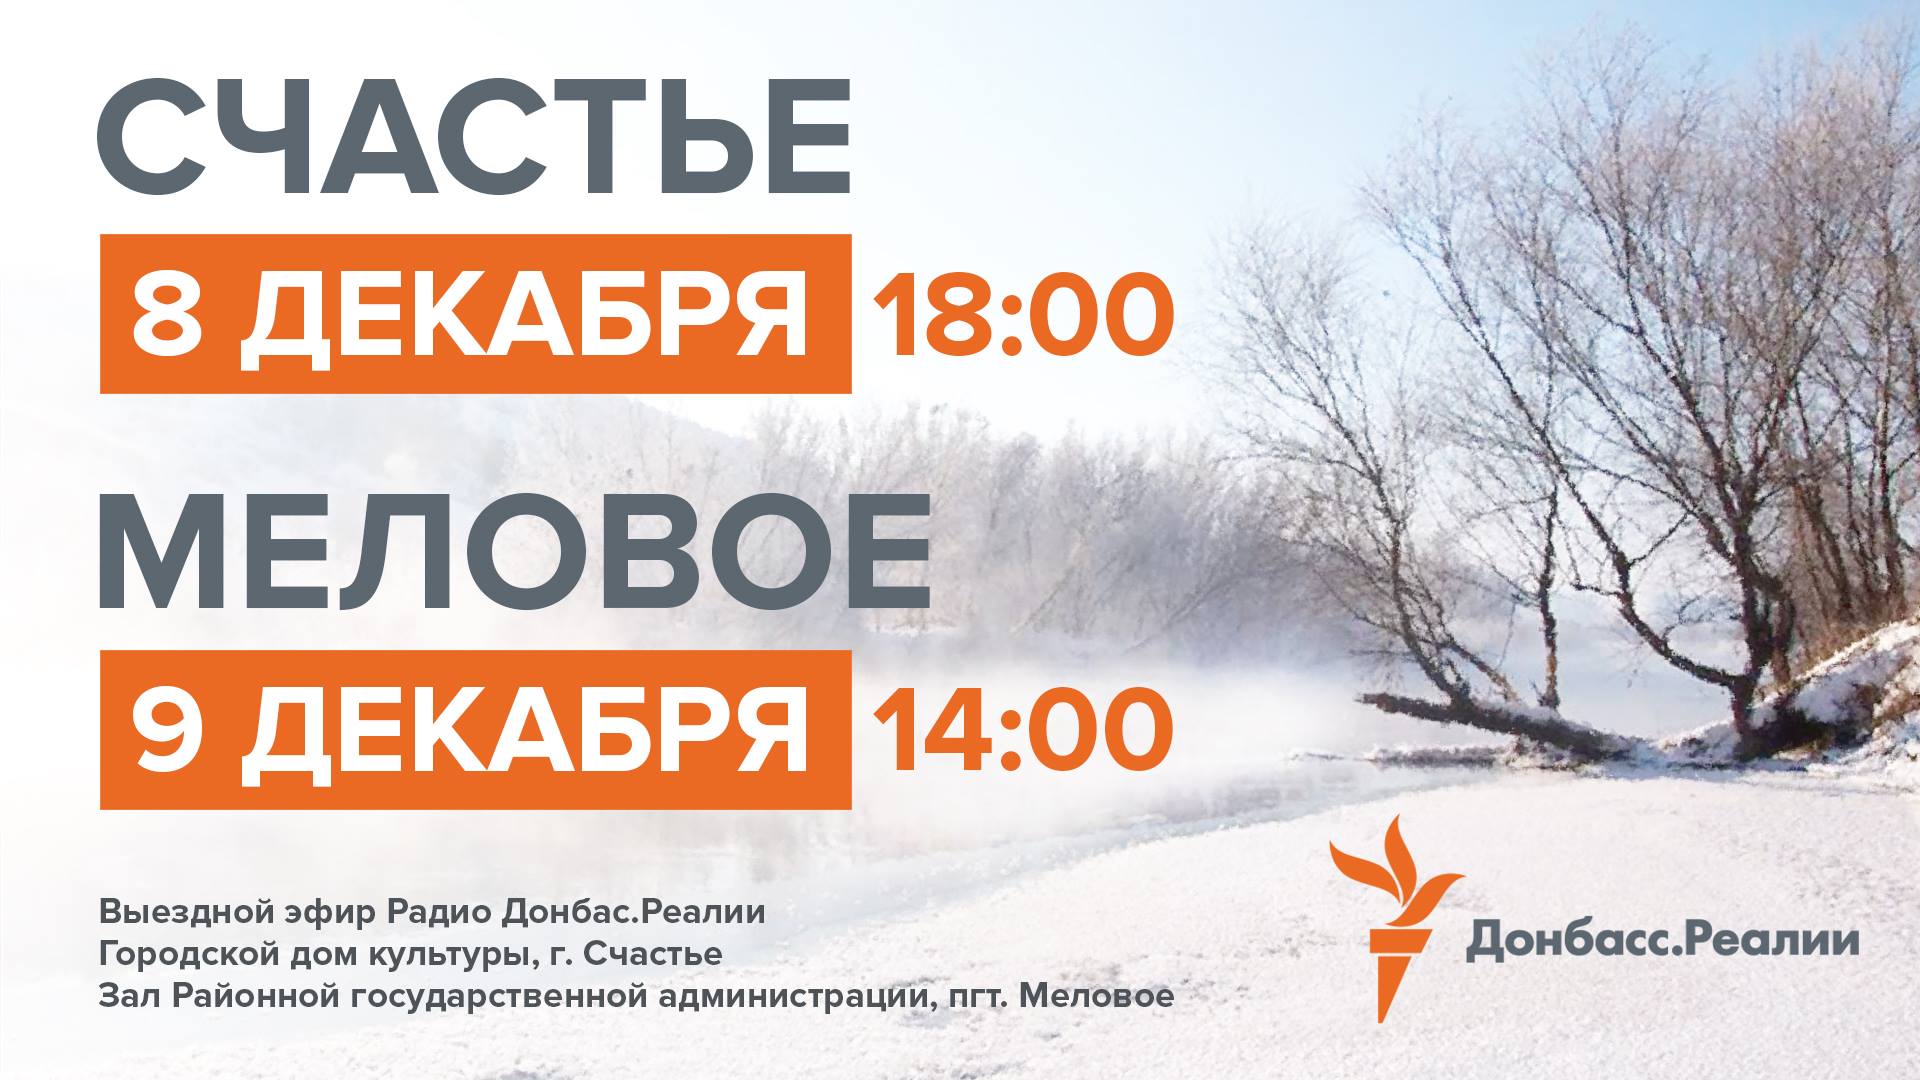 8 та 9 грудня – виїзні ефіри «Радіо "Донбас.Реалії"» у Щасті та Міловому